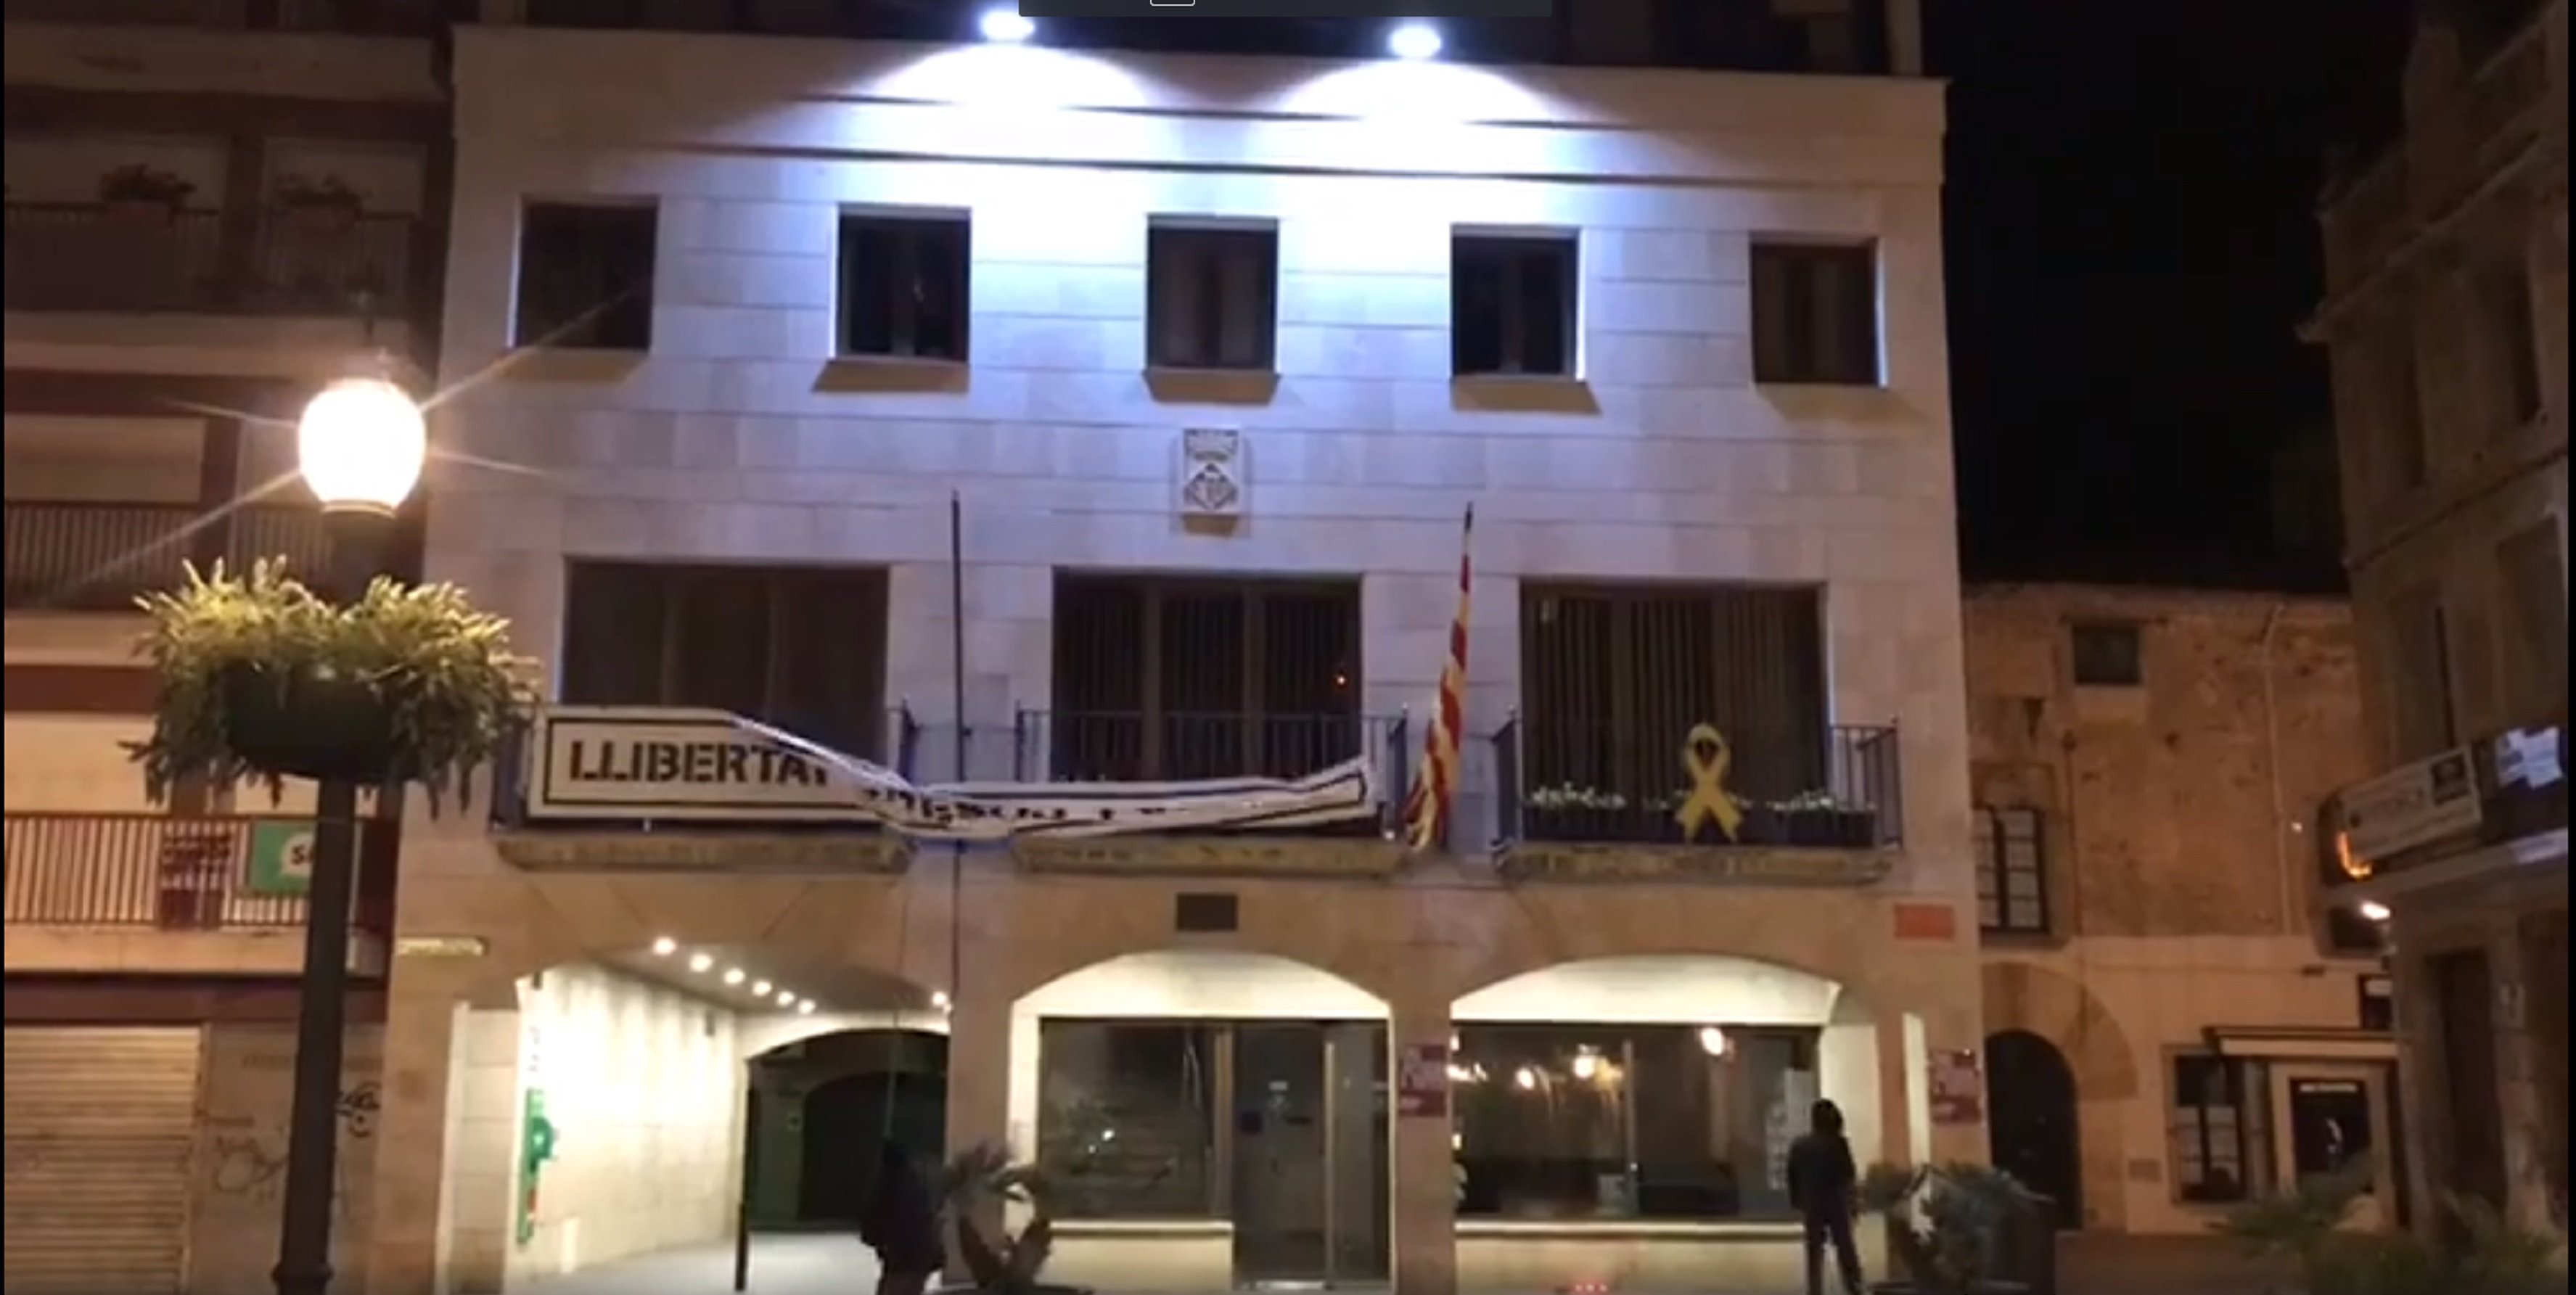 Ultras encapuchados roban la pancarta del balcón del ayuntamiento de Calella